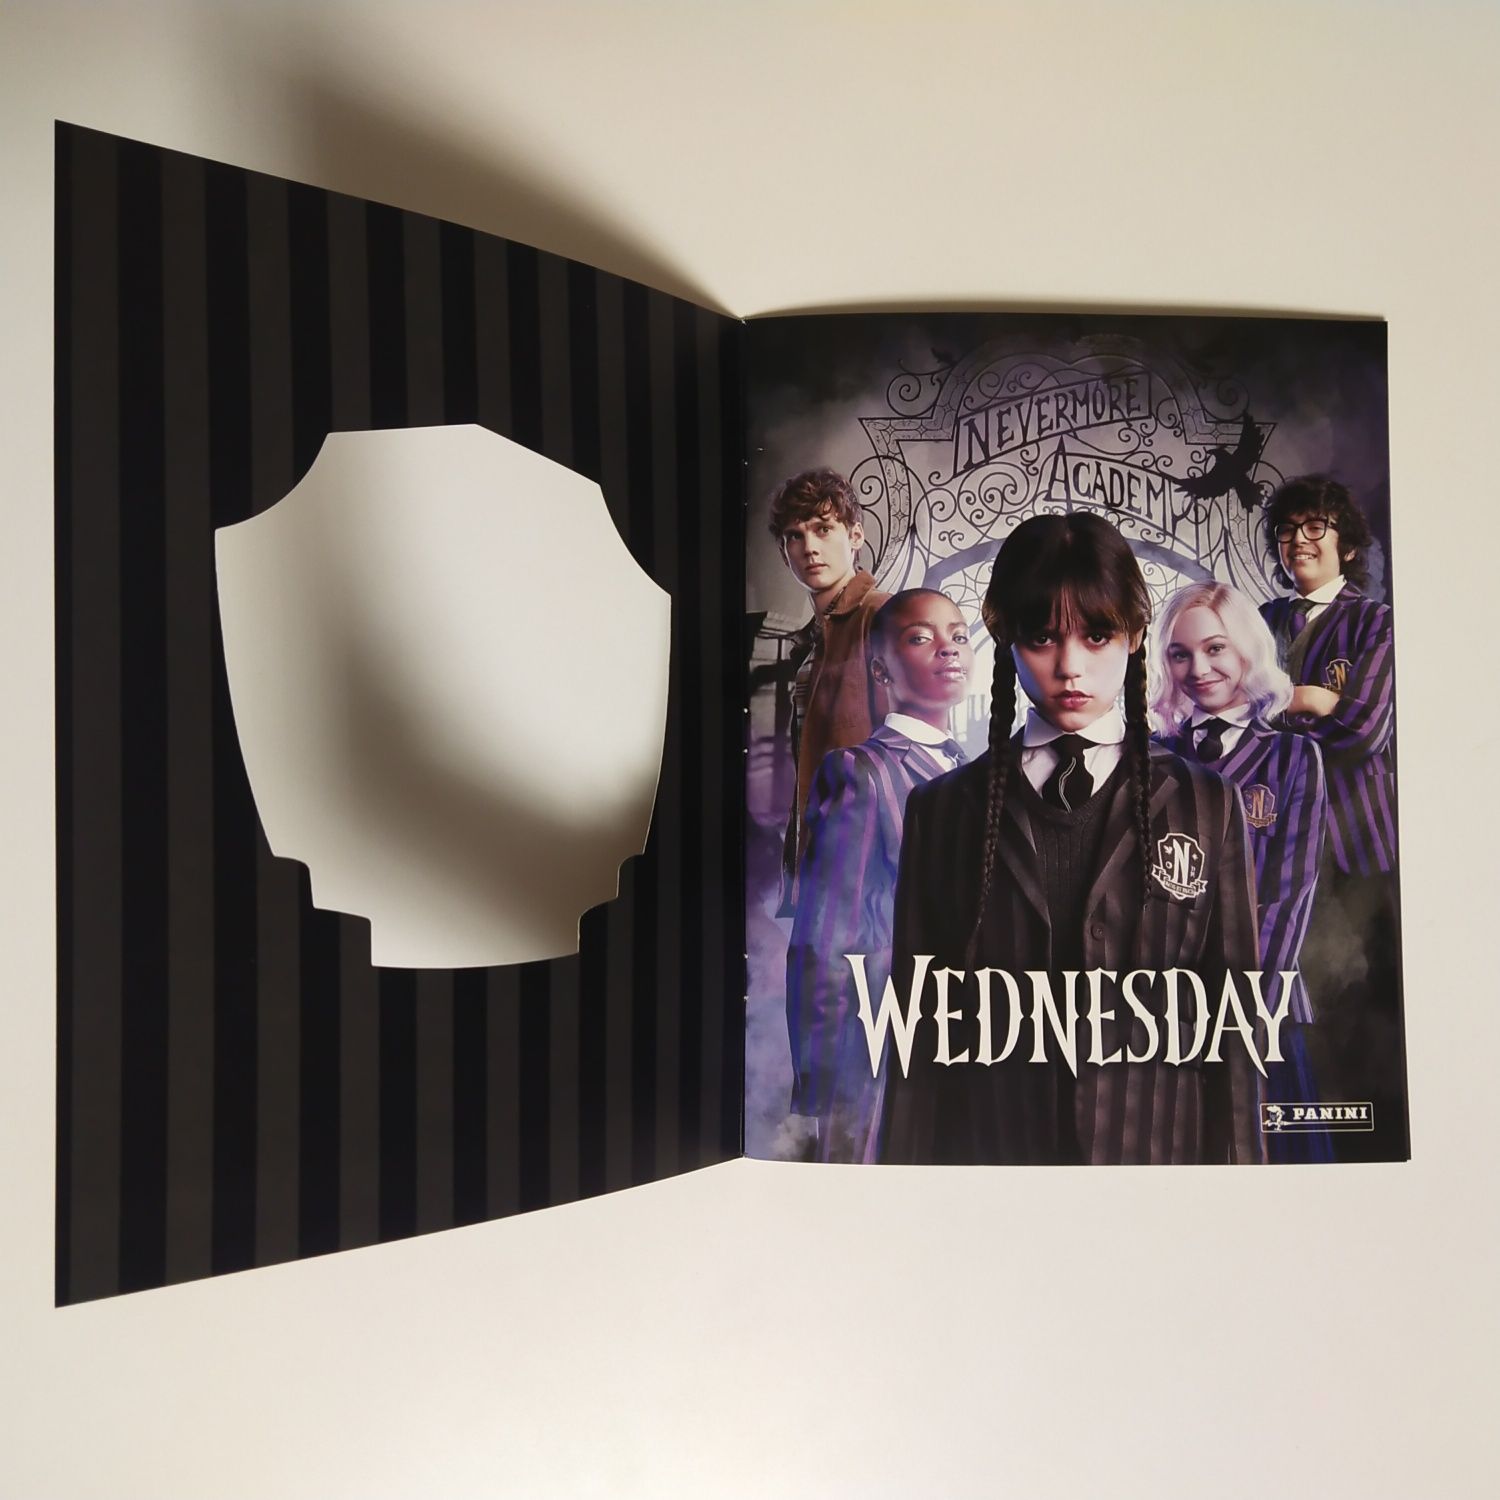 Wednesday венсдей альбом + наклейки